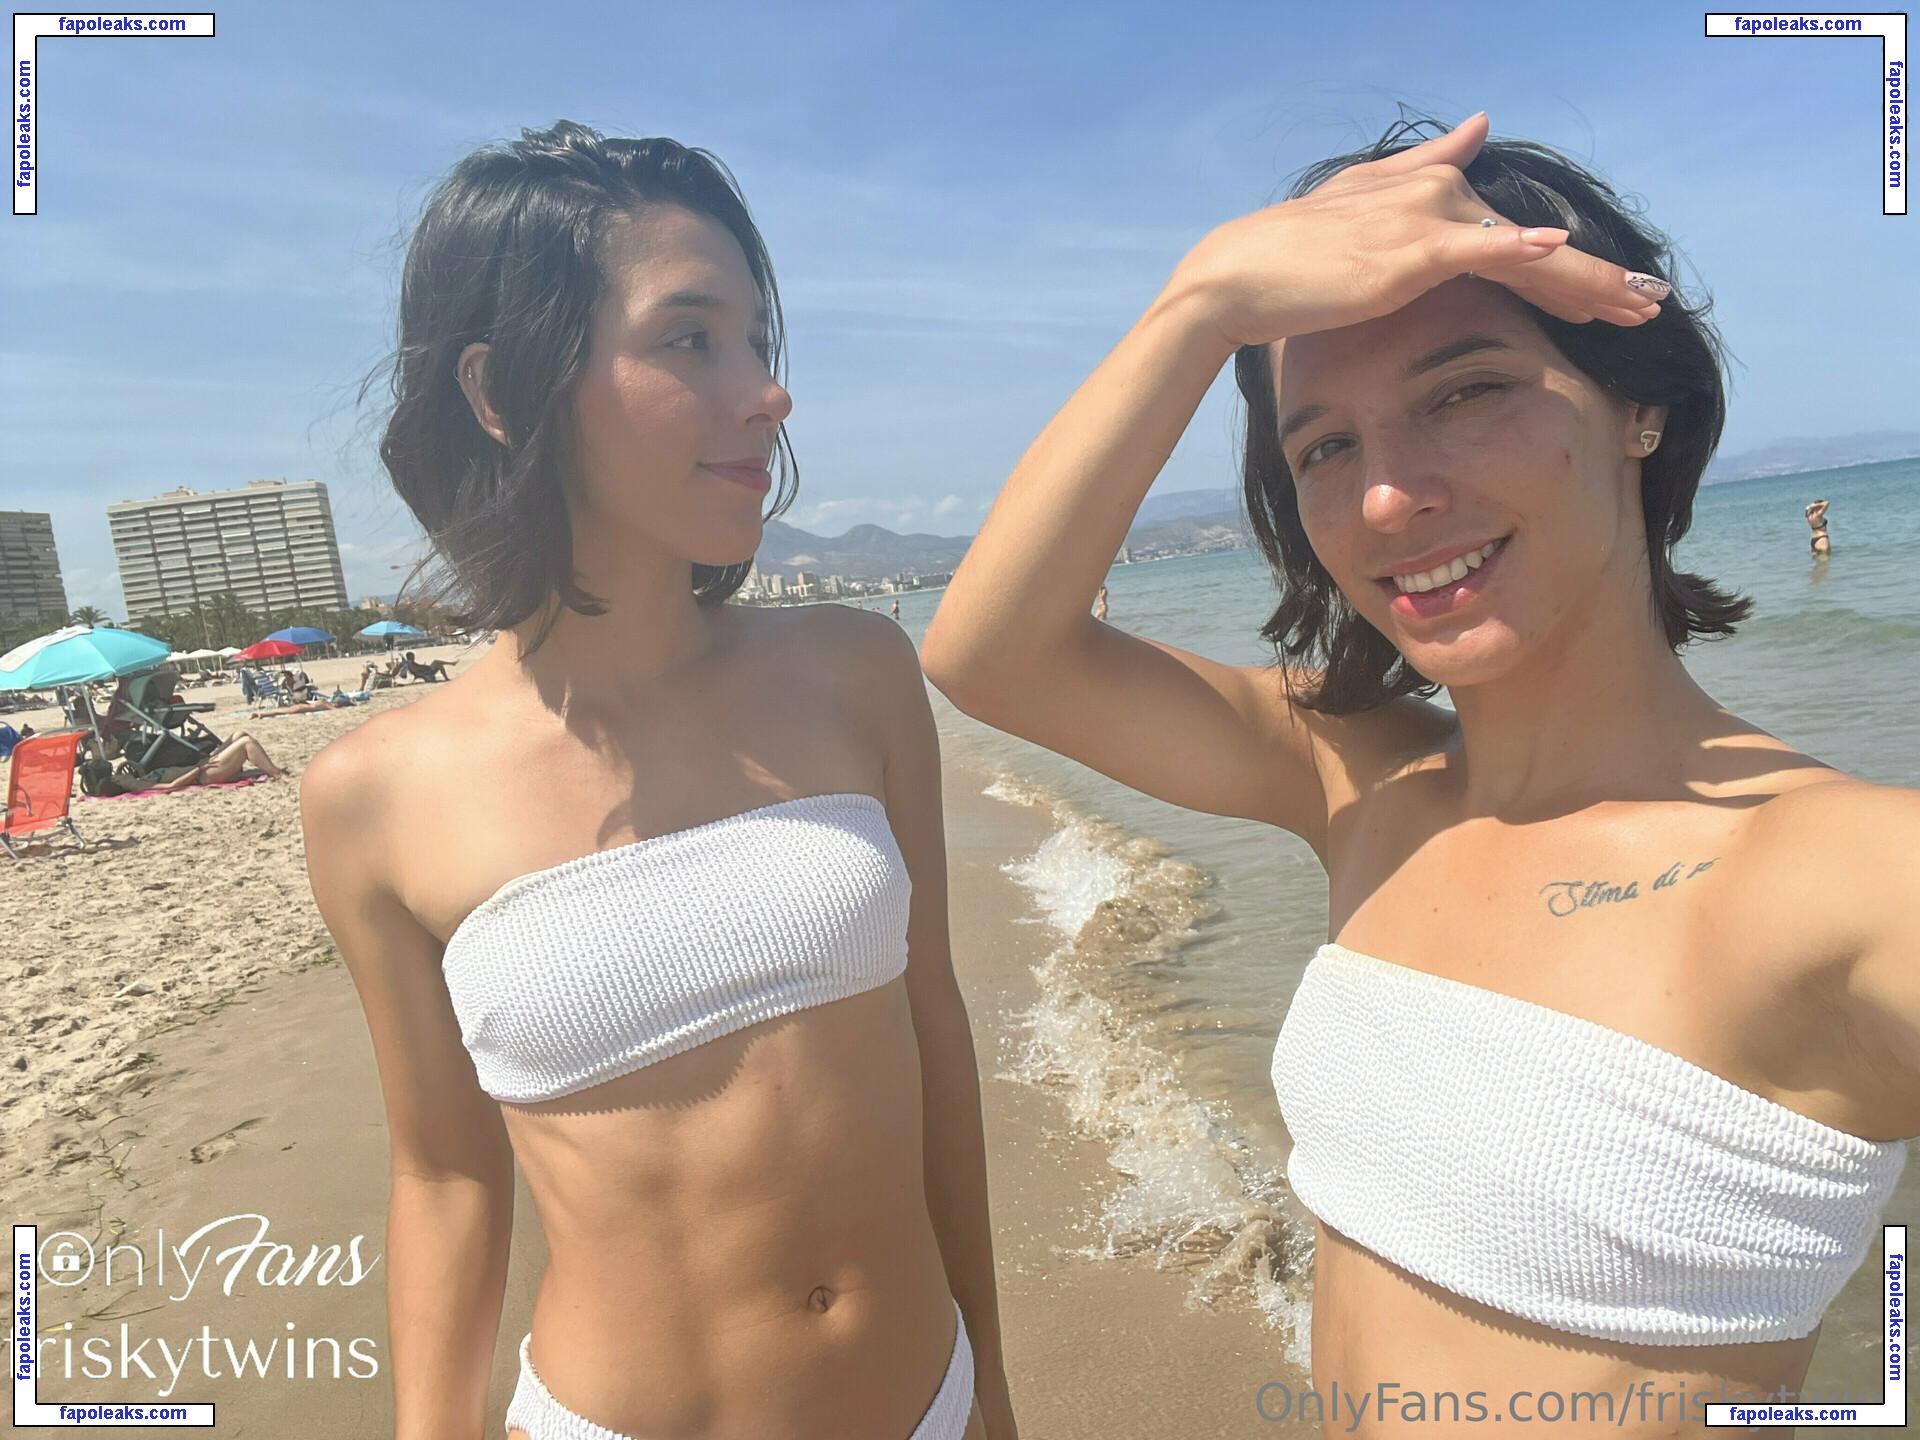 Frisky Twins / FriskyAna / FriskyIsa / frisky_ana / friskytwins nude photo #0119 from OnlyFans